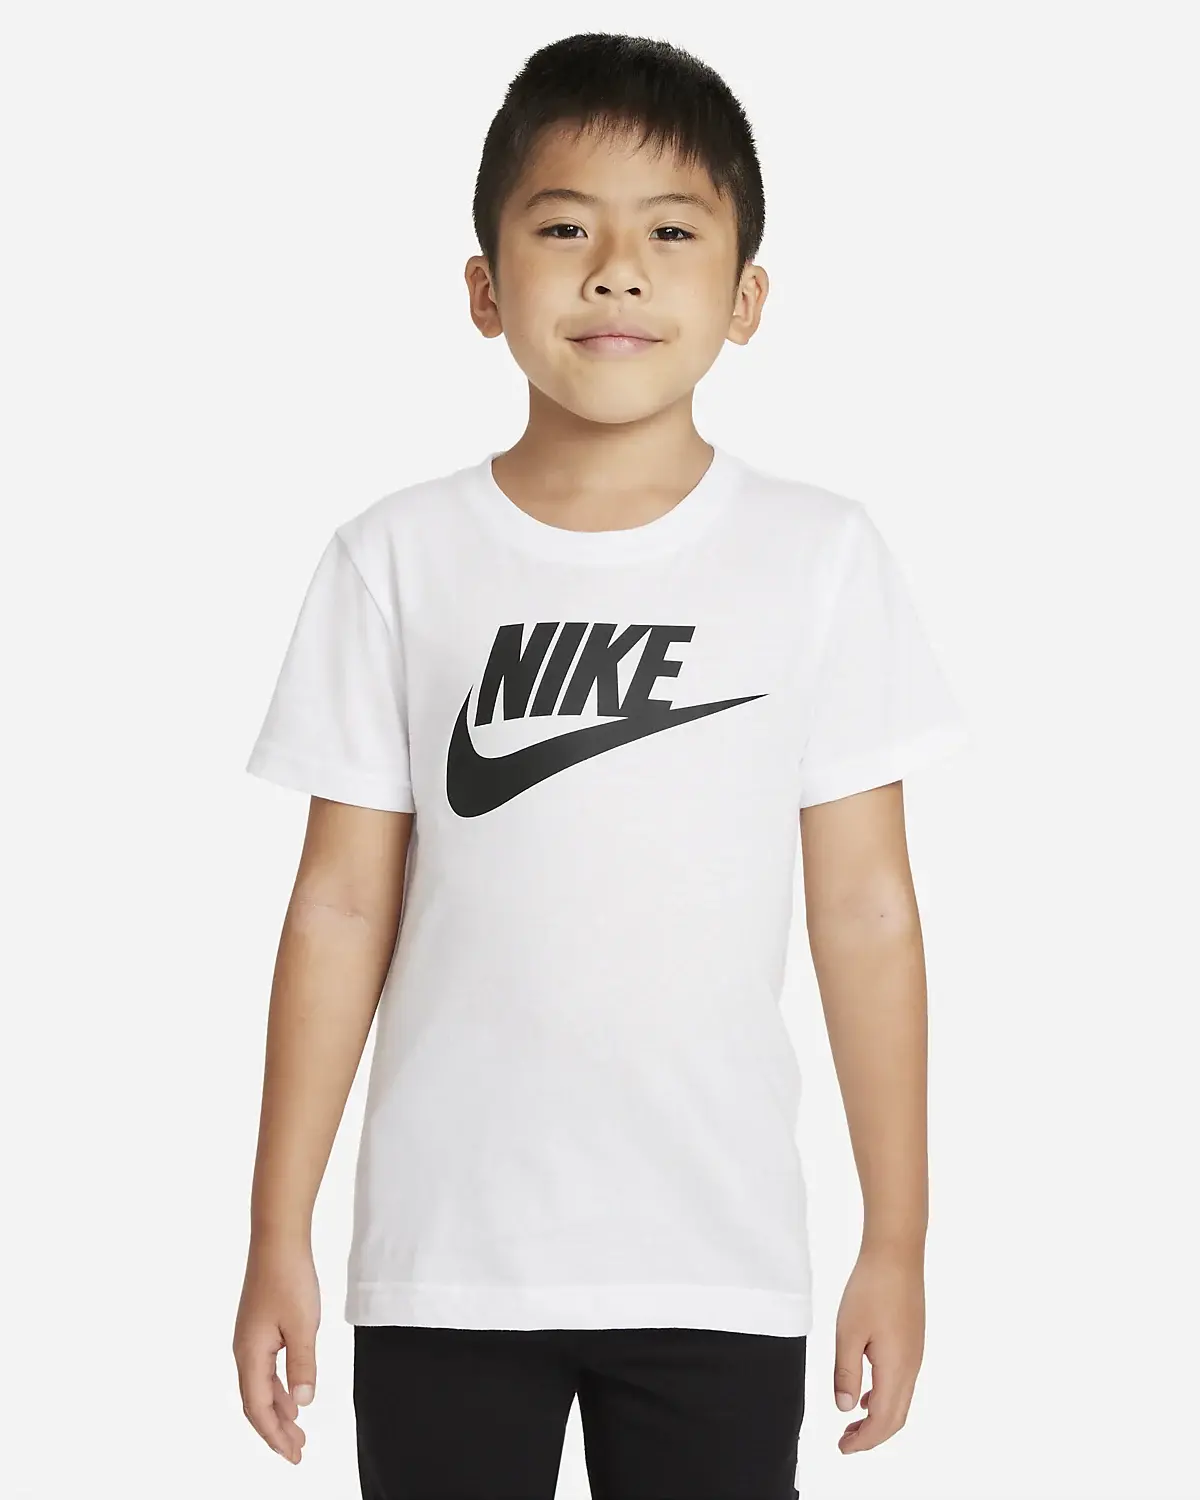 Nike T-shirt. 1